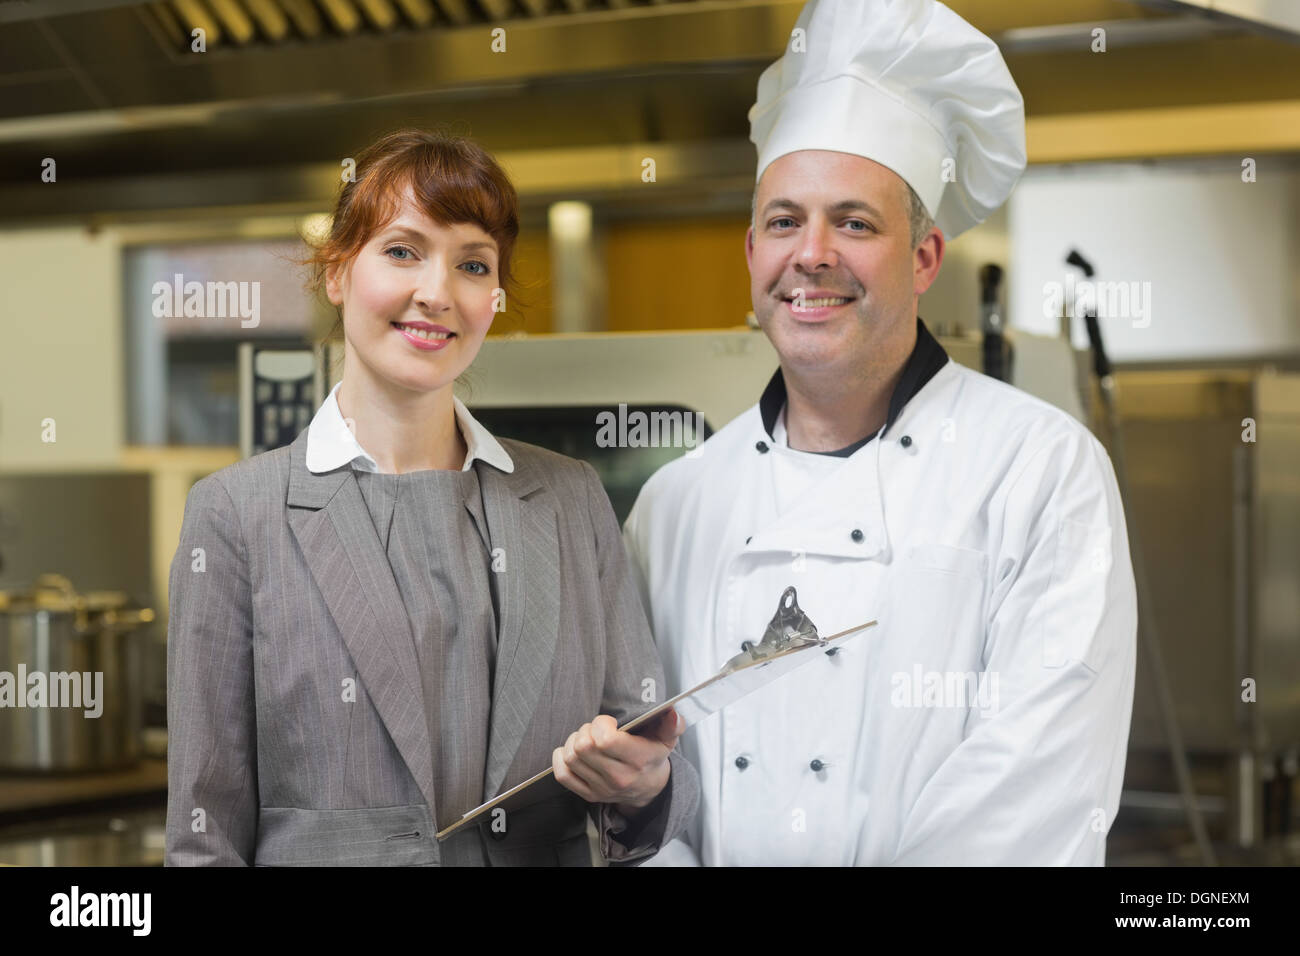 Mature chef cuisinier posant avec la femme manager Banque D'Images